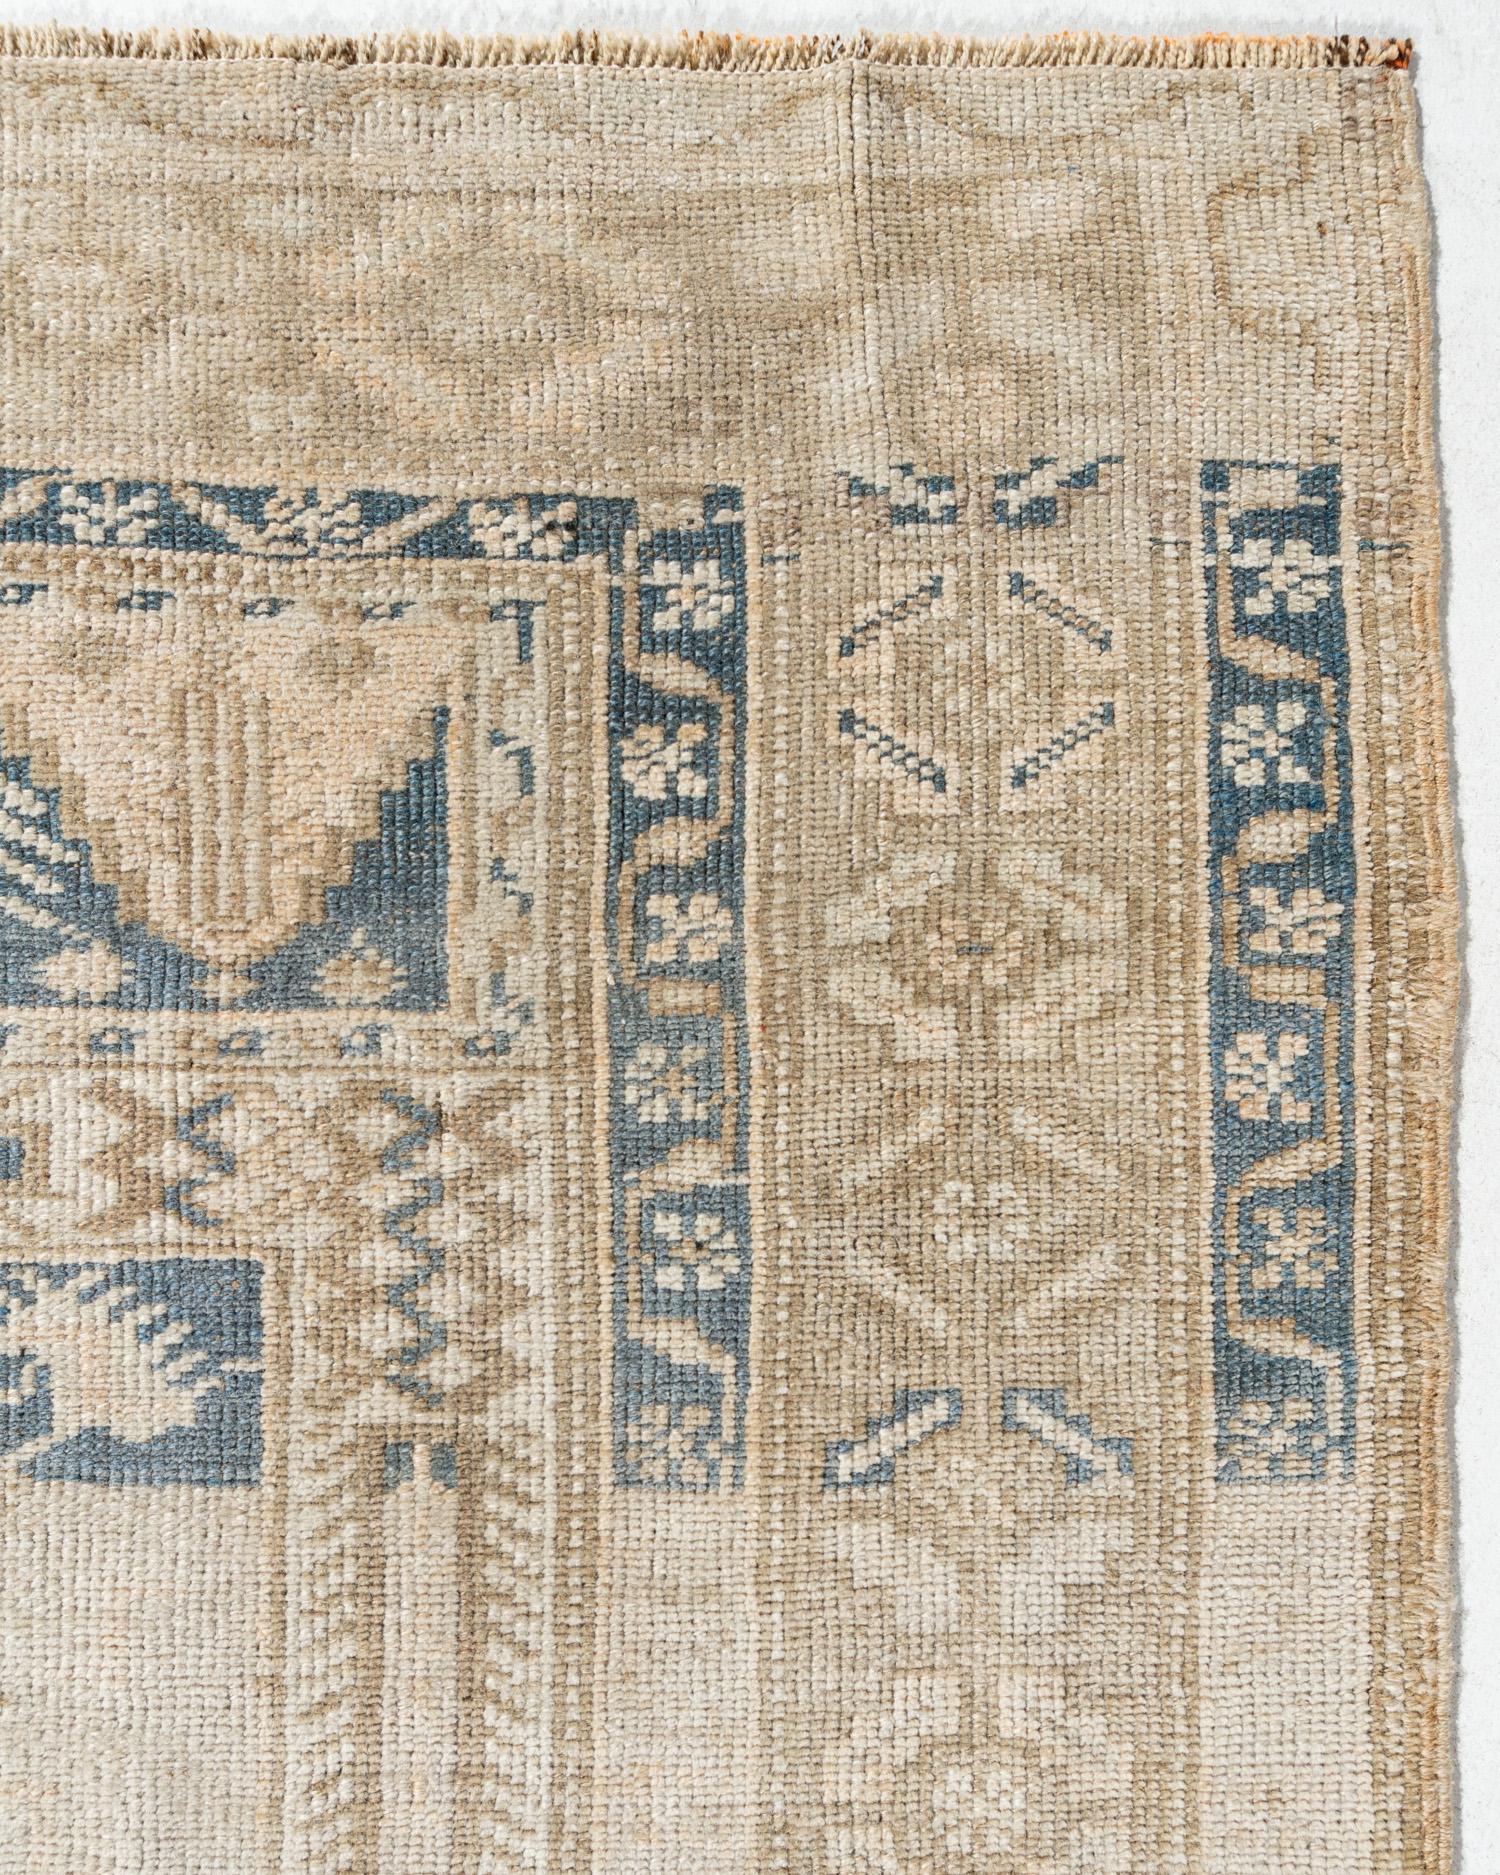 Vintage Beige Türkisch Oushak Bereich Teppich, 5'3 x 9'9. Dieser schöne Teppich, der in den 1940er Jahren in der Türkei handgeknüpft wurde, hat einen natürlichen Abrasch (Farbwechsel), der bei alten Stücken üblich ist und dem Teppich eine